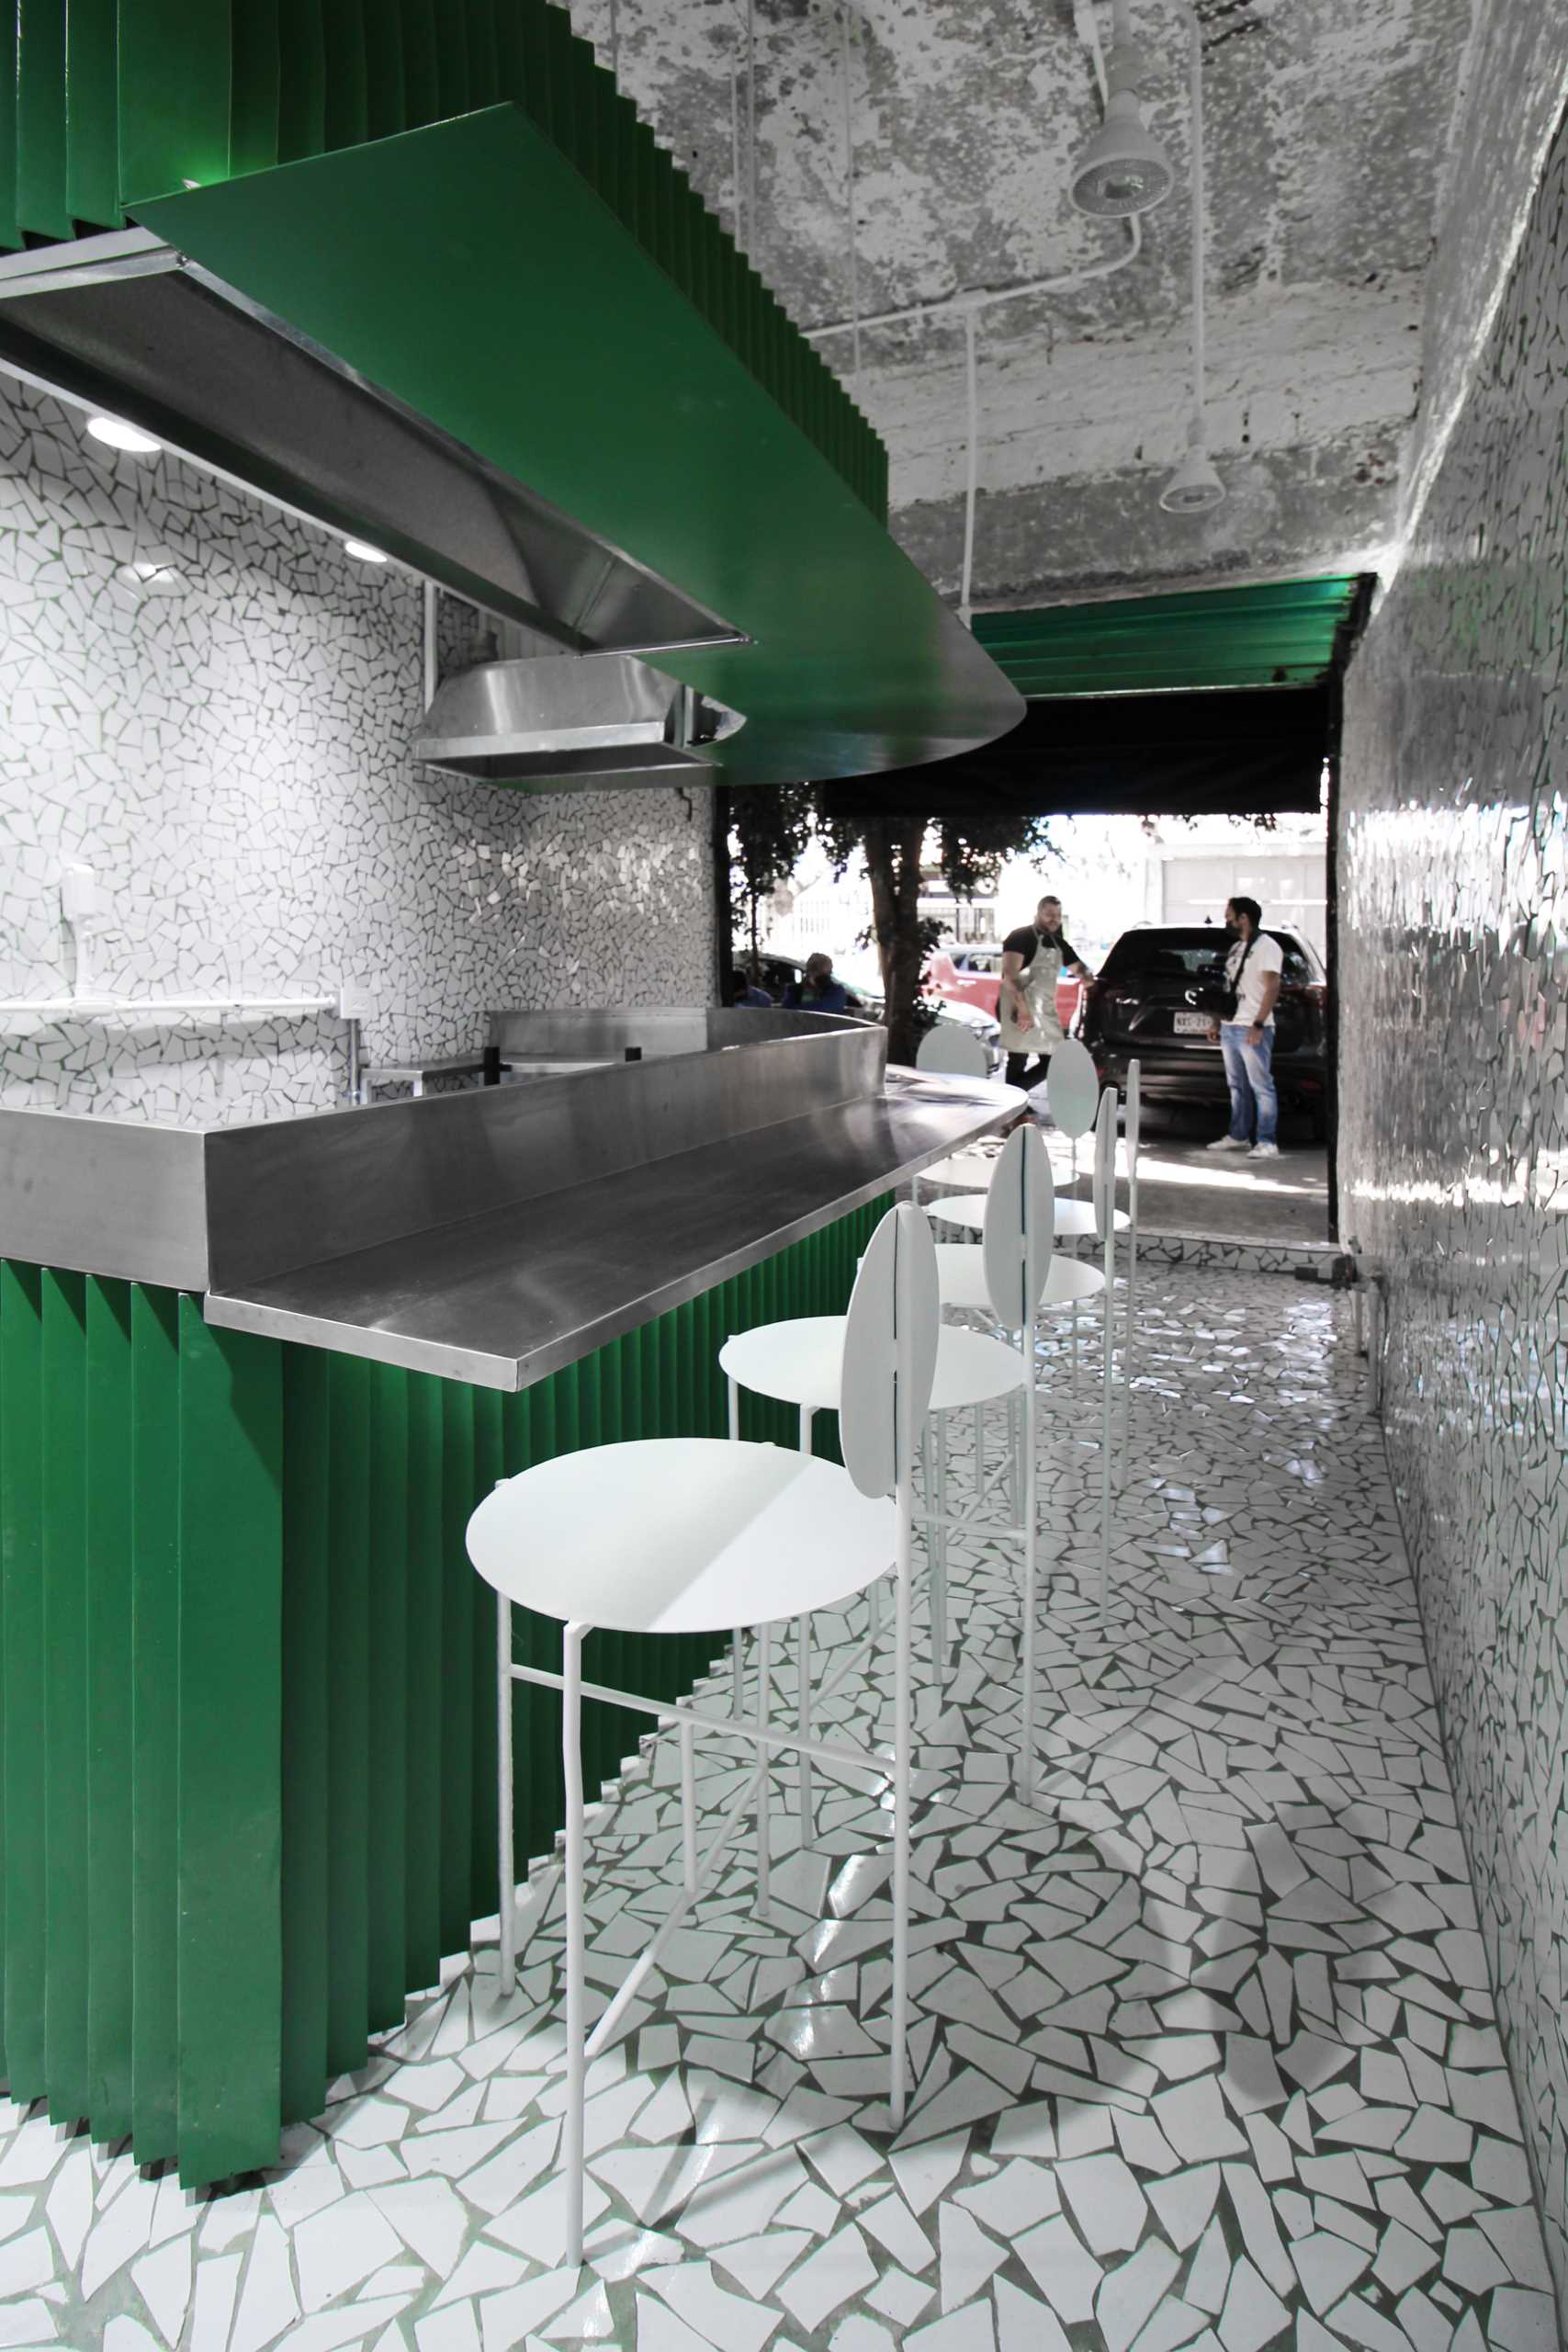 یک فروشگاه کوچک تاکو (taqueria) که دارای دیوارها و کف کاشی‌های ش،ته، و لهجه ف،ی سبز رنگ شده با چهارپایه‌های سفید است.